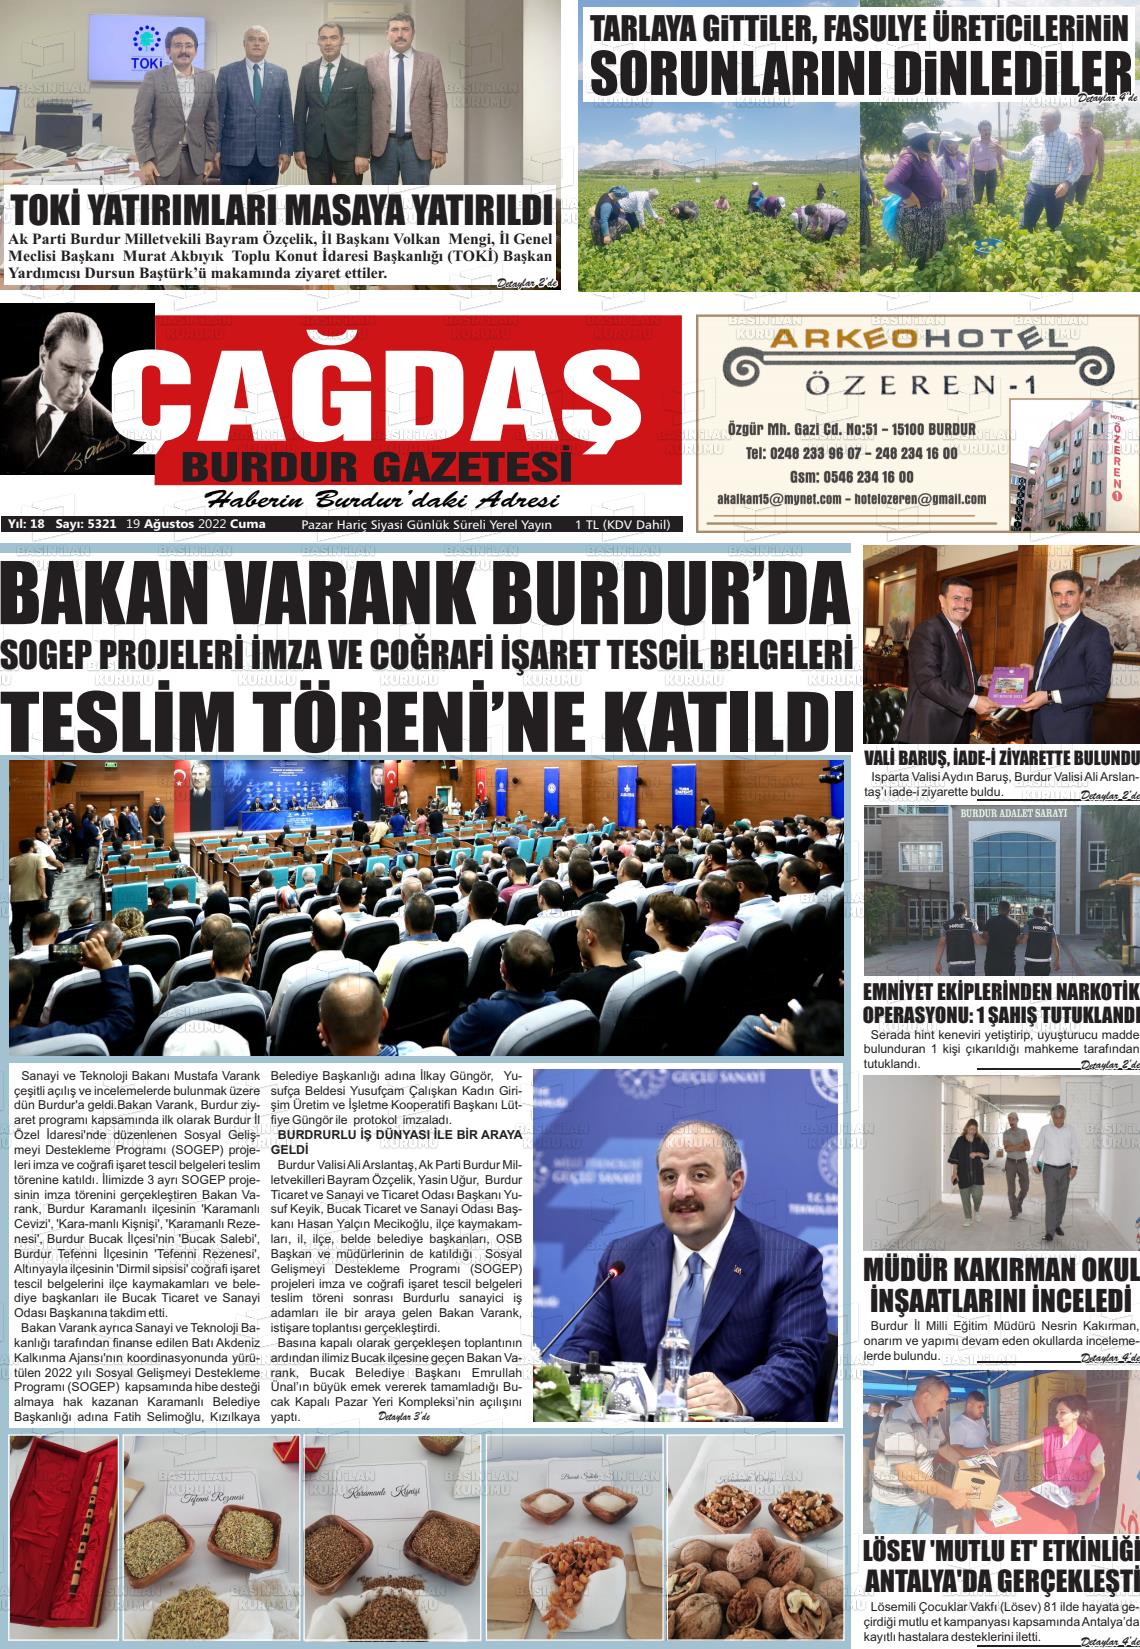 19 Ağustos 2022 Çağdaş Burdur Gazete Manşeti